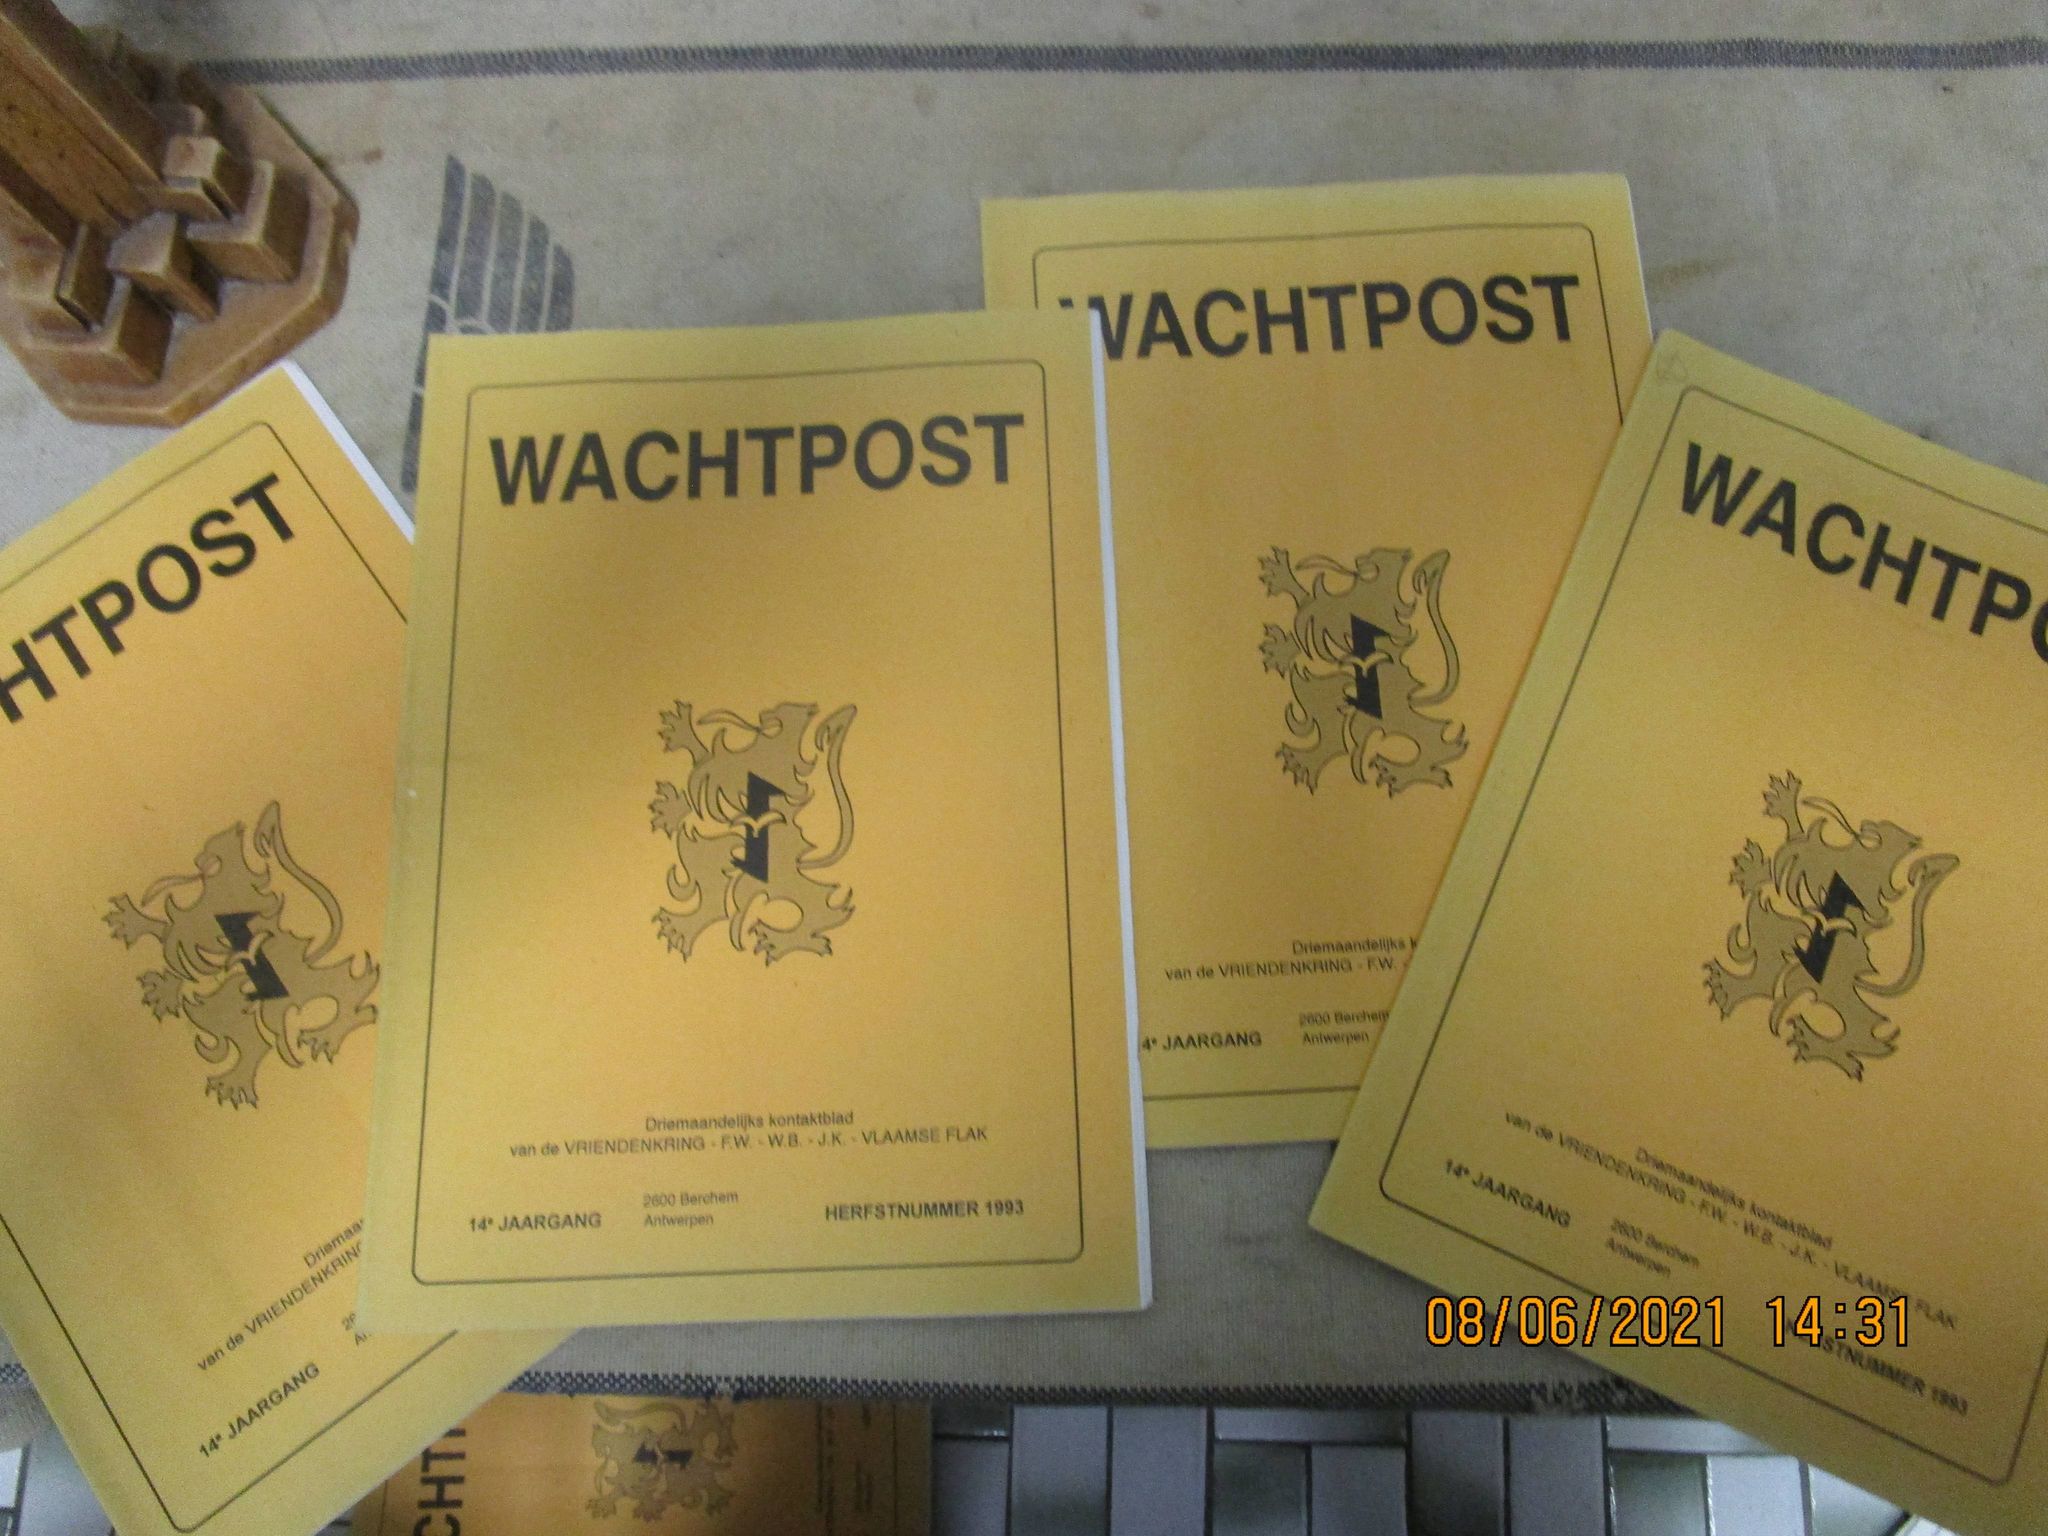 Wachtpost - Vlaams Flak - Sint Maartensfonds jaargang 2002 kompleet